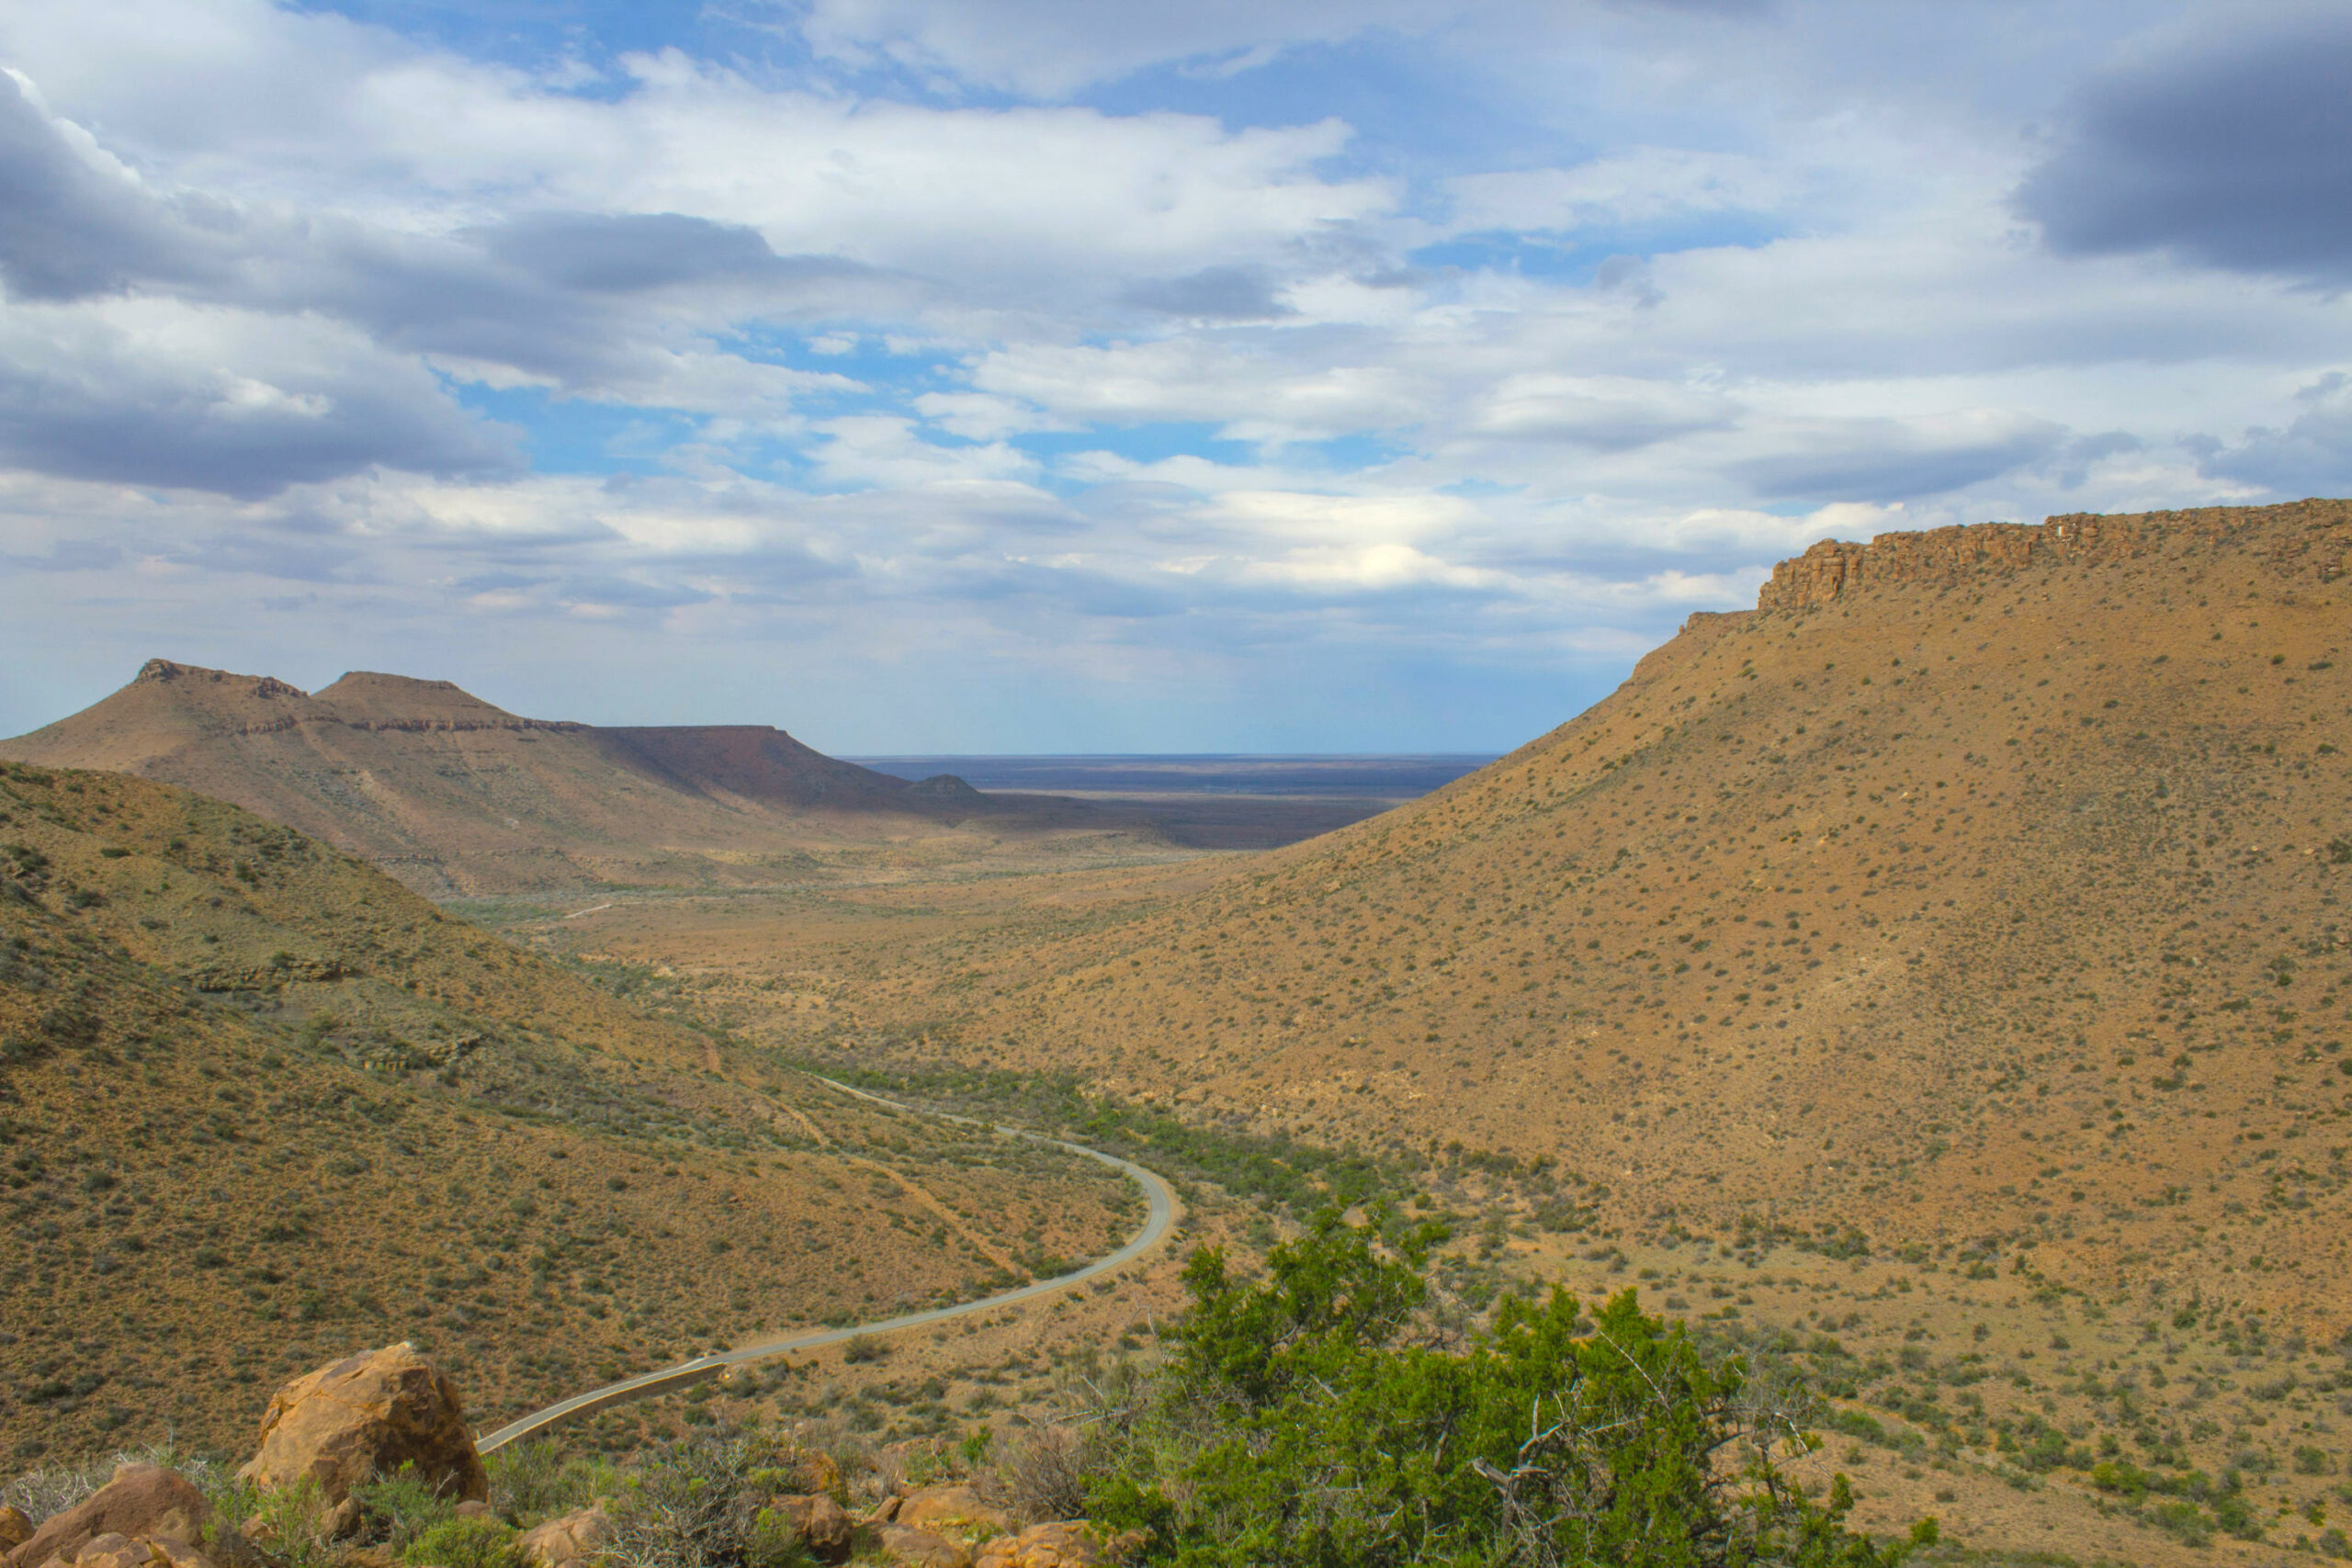 Das Bild zeigt Canyons in Afrika. Die Hänge sind trocken und felsig mit einigen Sträuchern. Im Tal verläuft eine Straße.